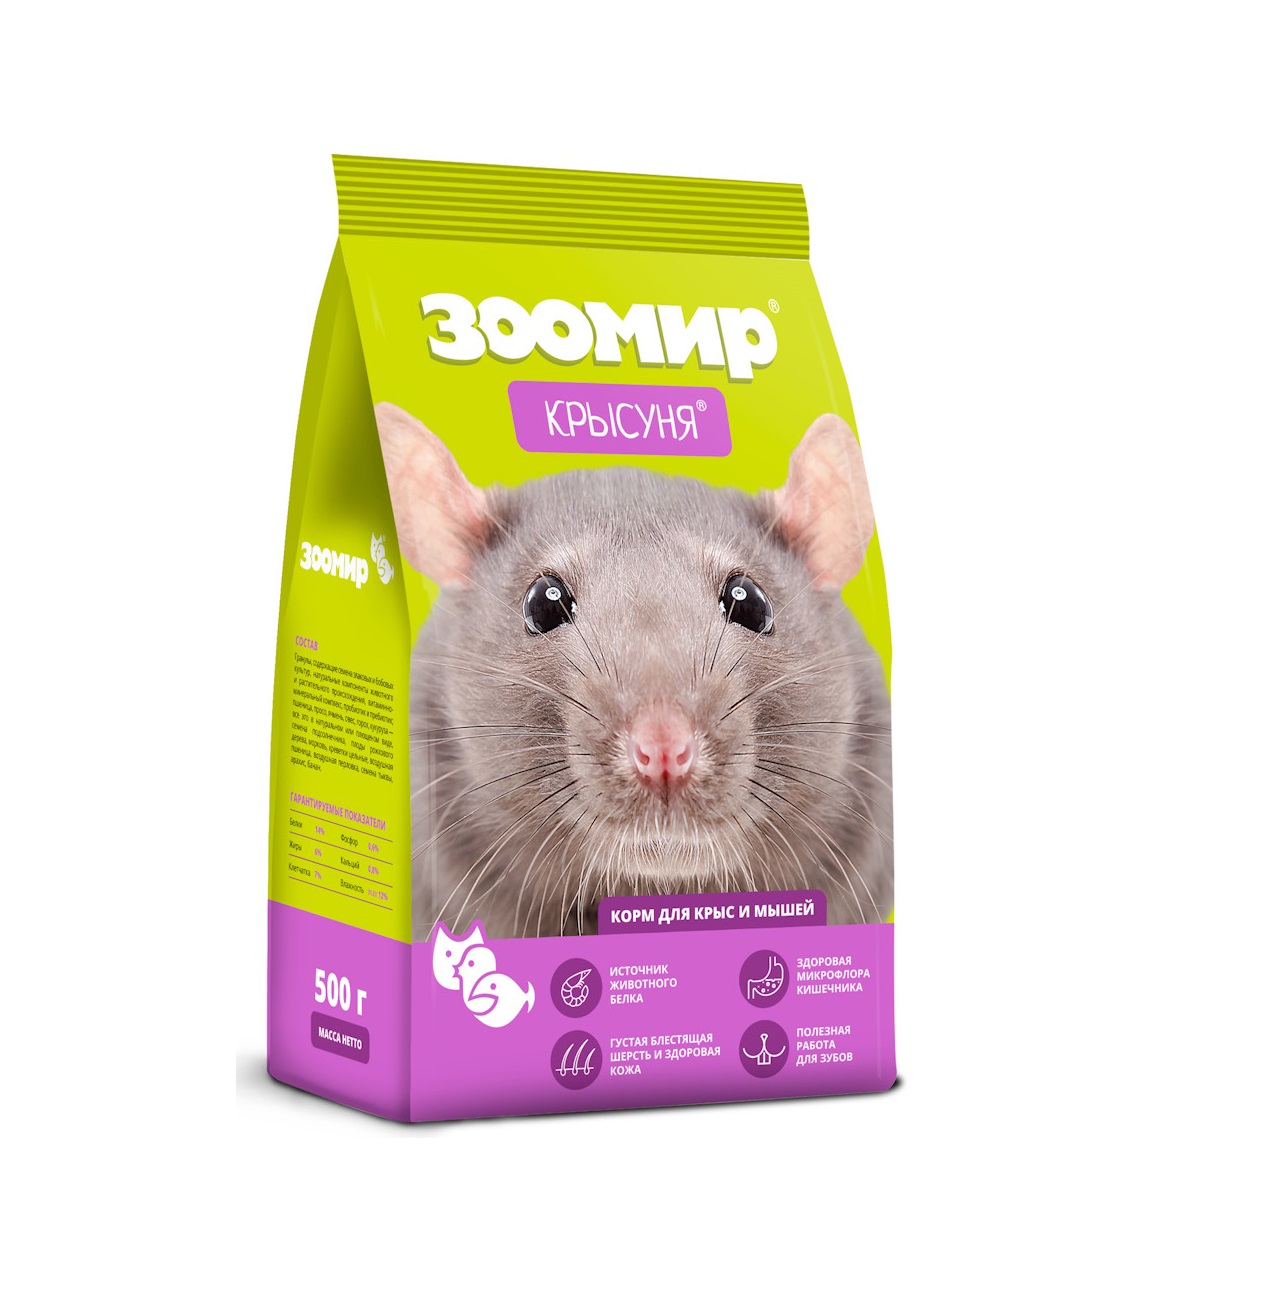 Крысуня 500гр - корм для Крыс (Зоомир)